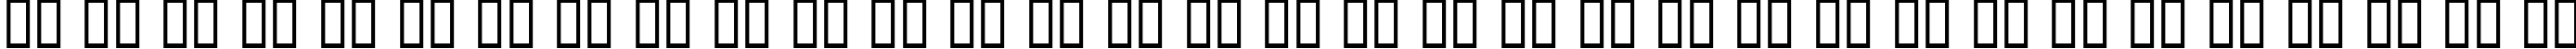 Пример написания русского алфавита шрифтом BubbleGum